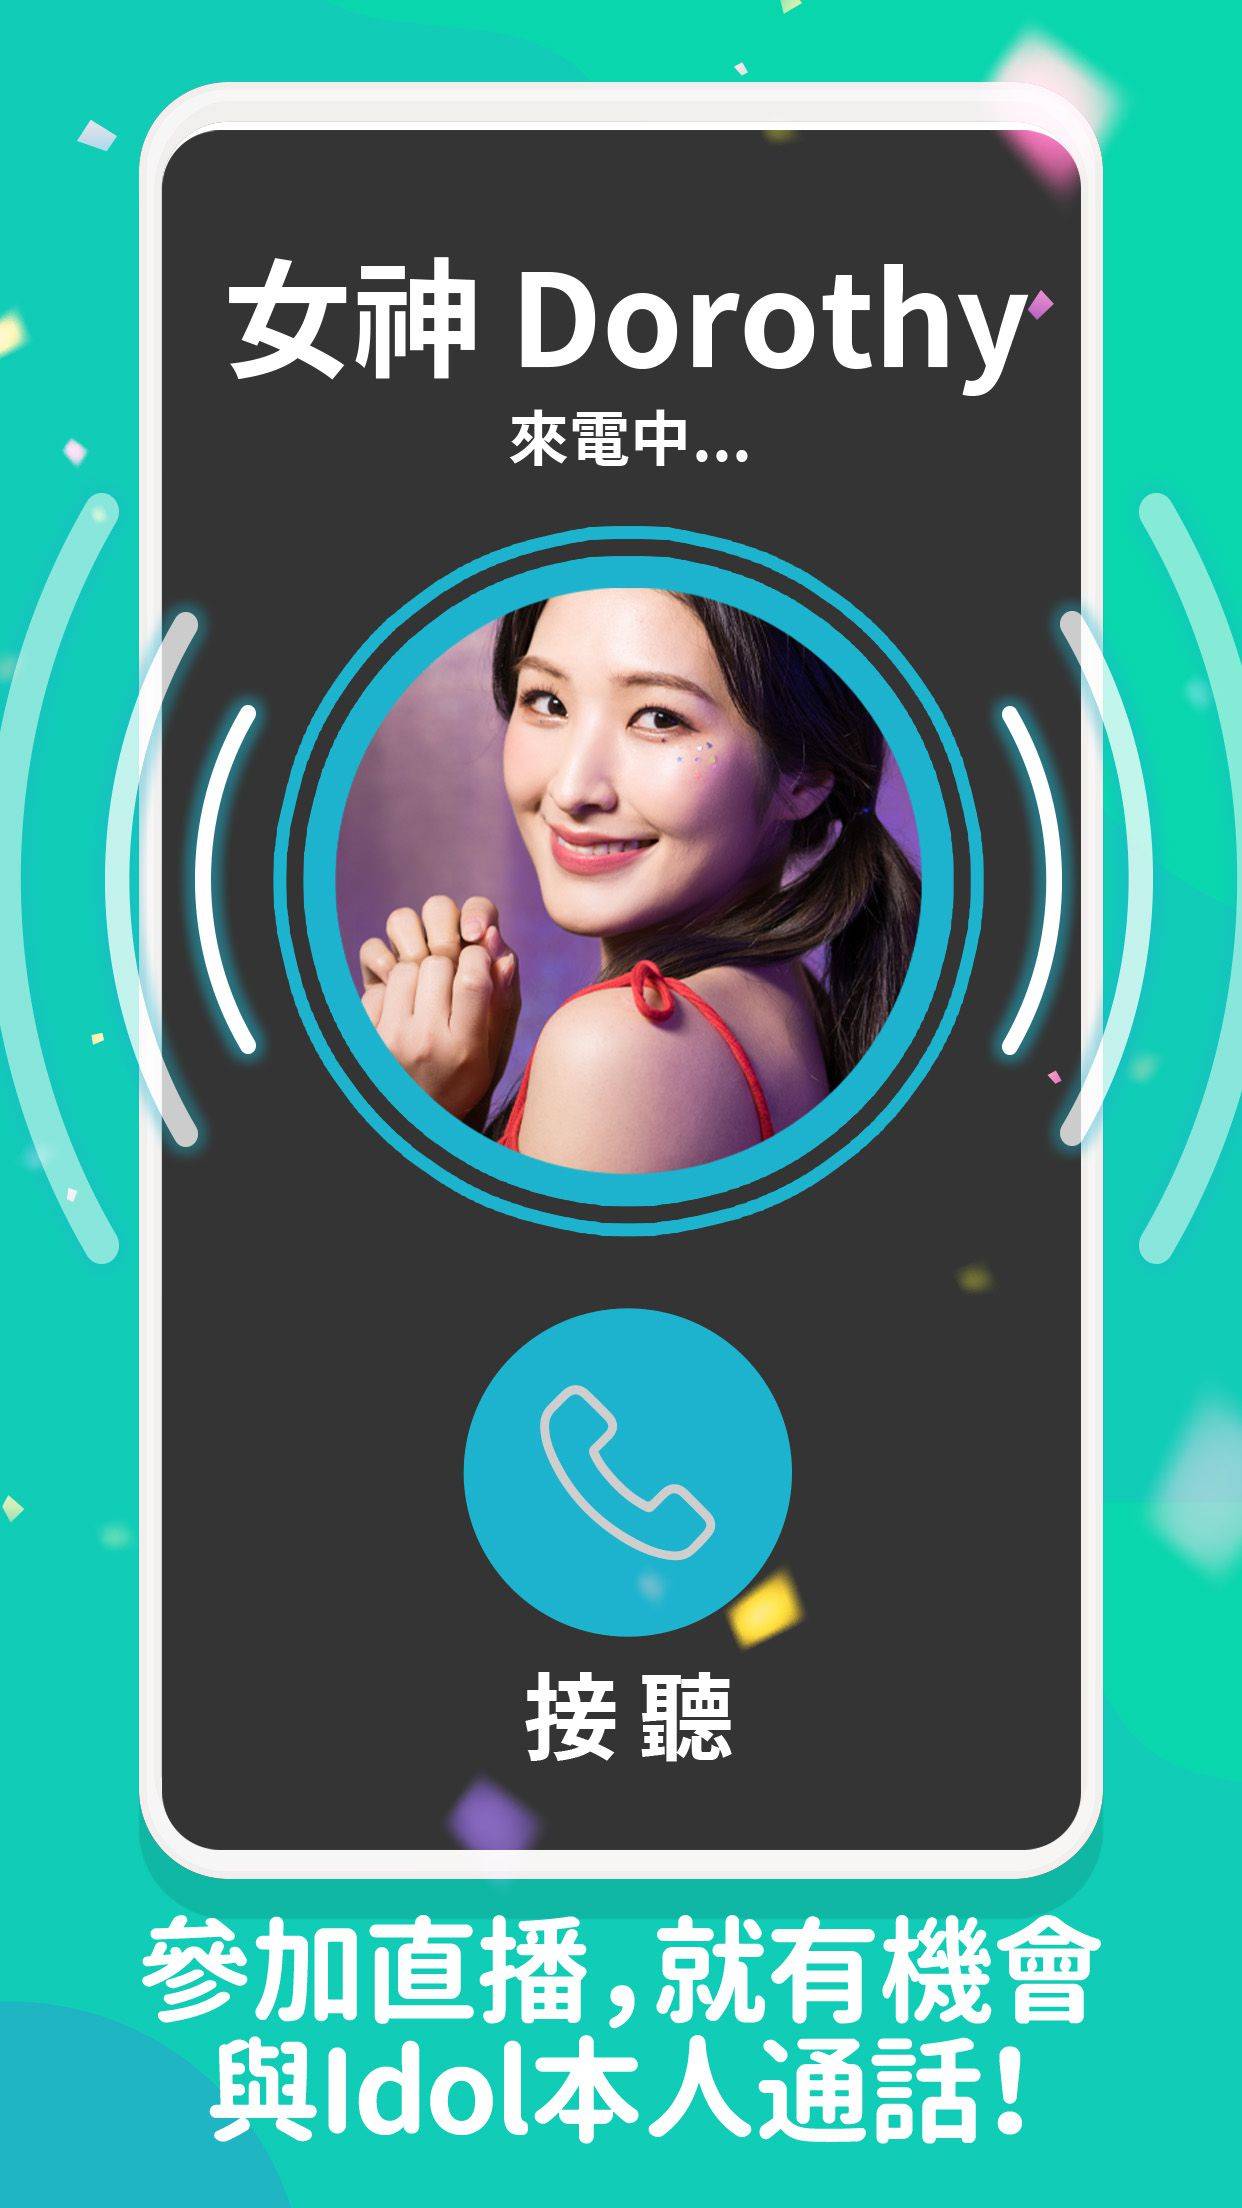 So-net  全新娛樂App「Dolfan」試營運上線 把偶像粉絲兜在一起  一站式服務讓你零距離